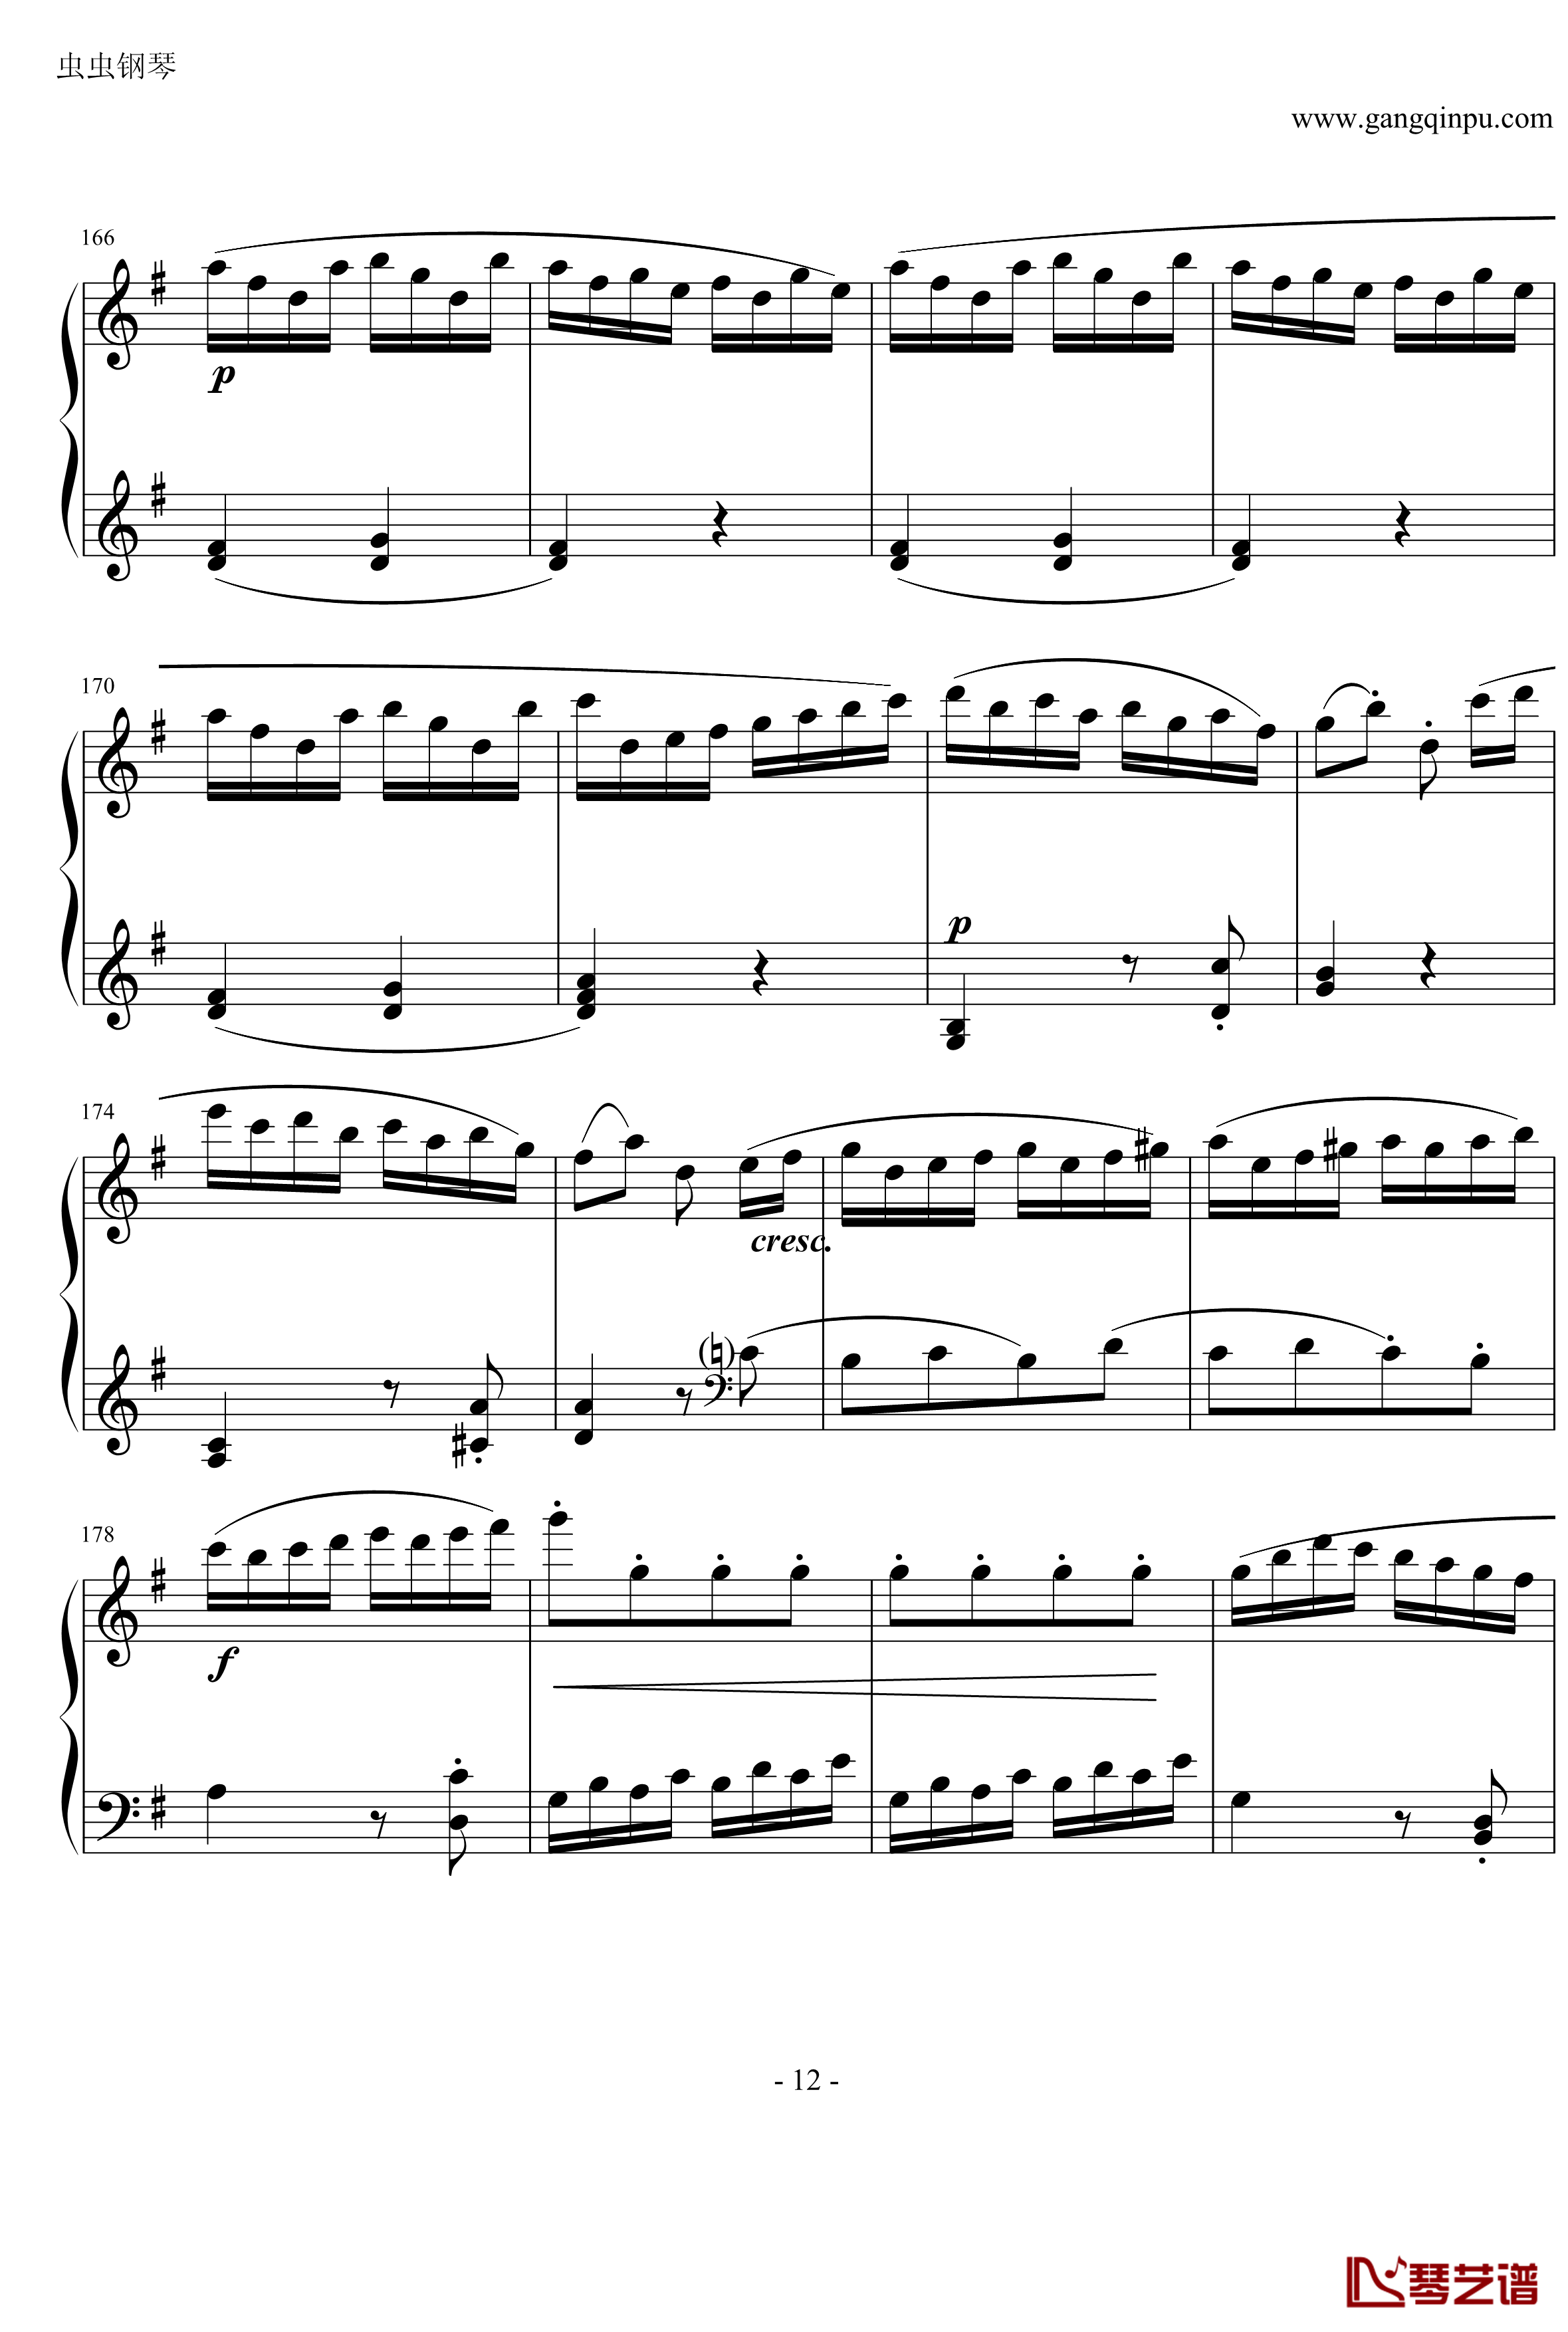 吉普赛回旋曲钢琴谱-海顿12